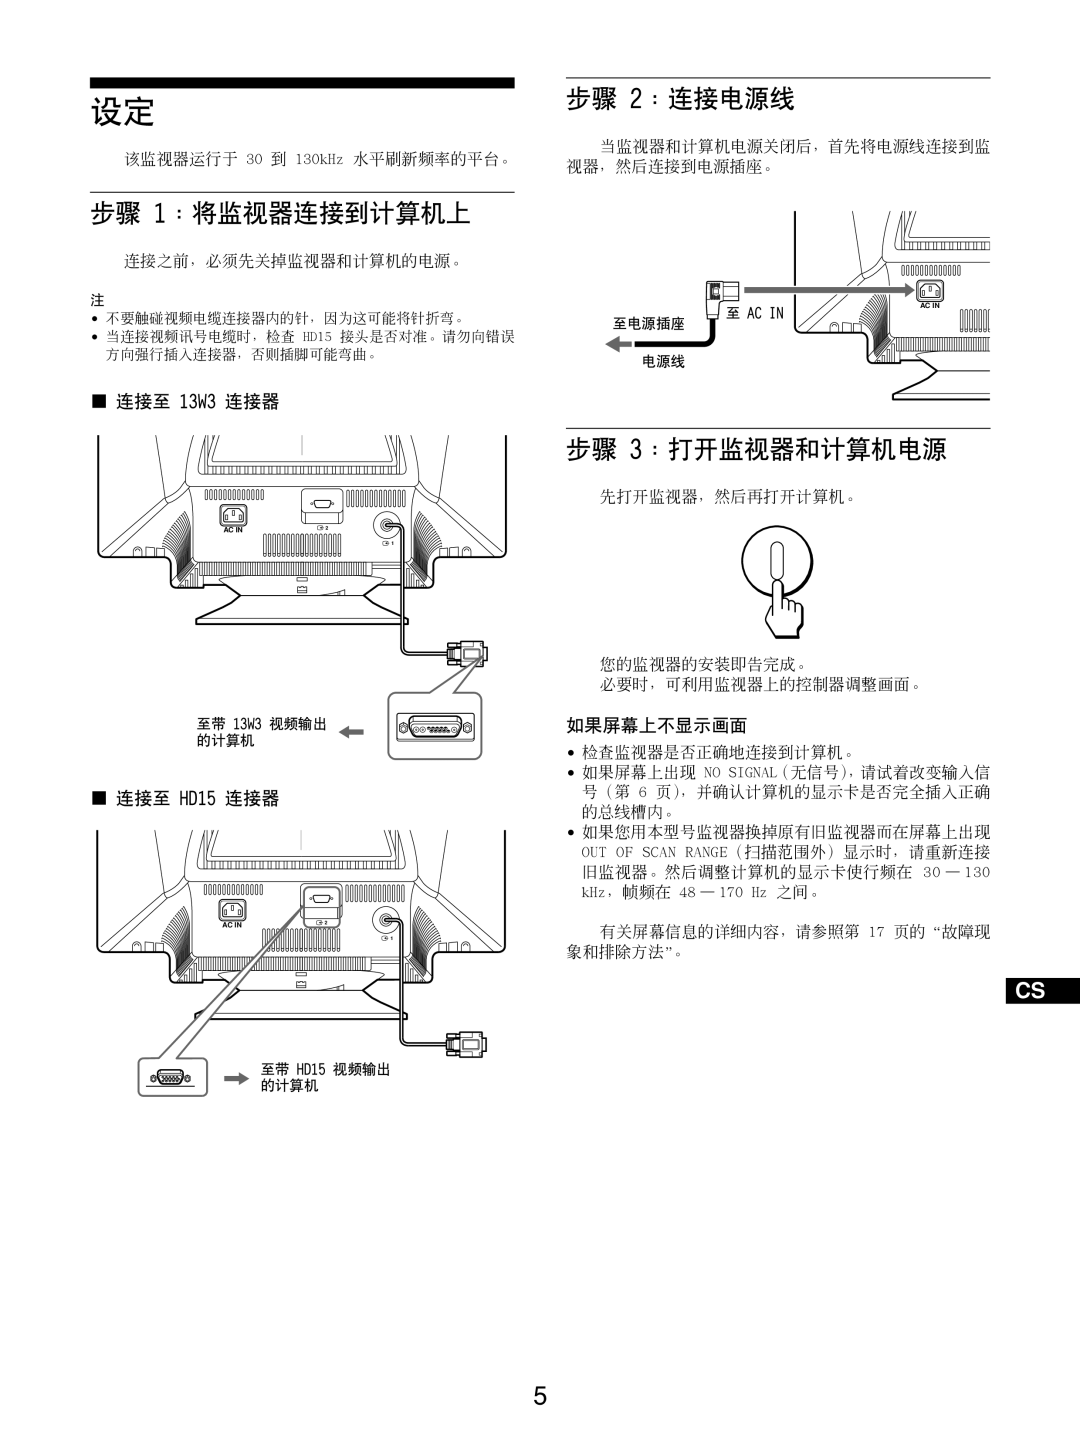 Sony GDM-5510 operating instructions 步骤 1：将监视器连接到计算机上, 步骤 2：连接电源线, 步骤 3：打开监视器和计算机电源, 连接至 13W3 连接器, 连接至 HD15 连接器, 如果屏幕上不显示画面 